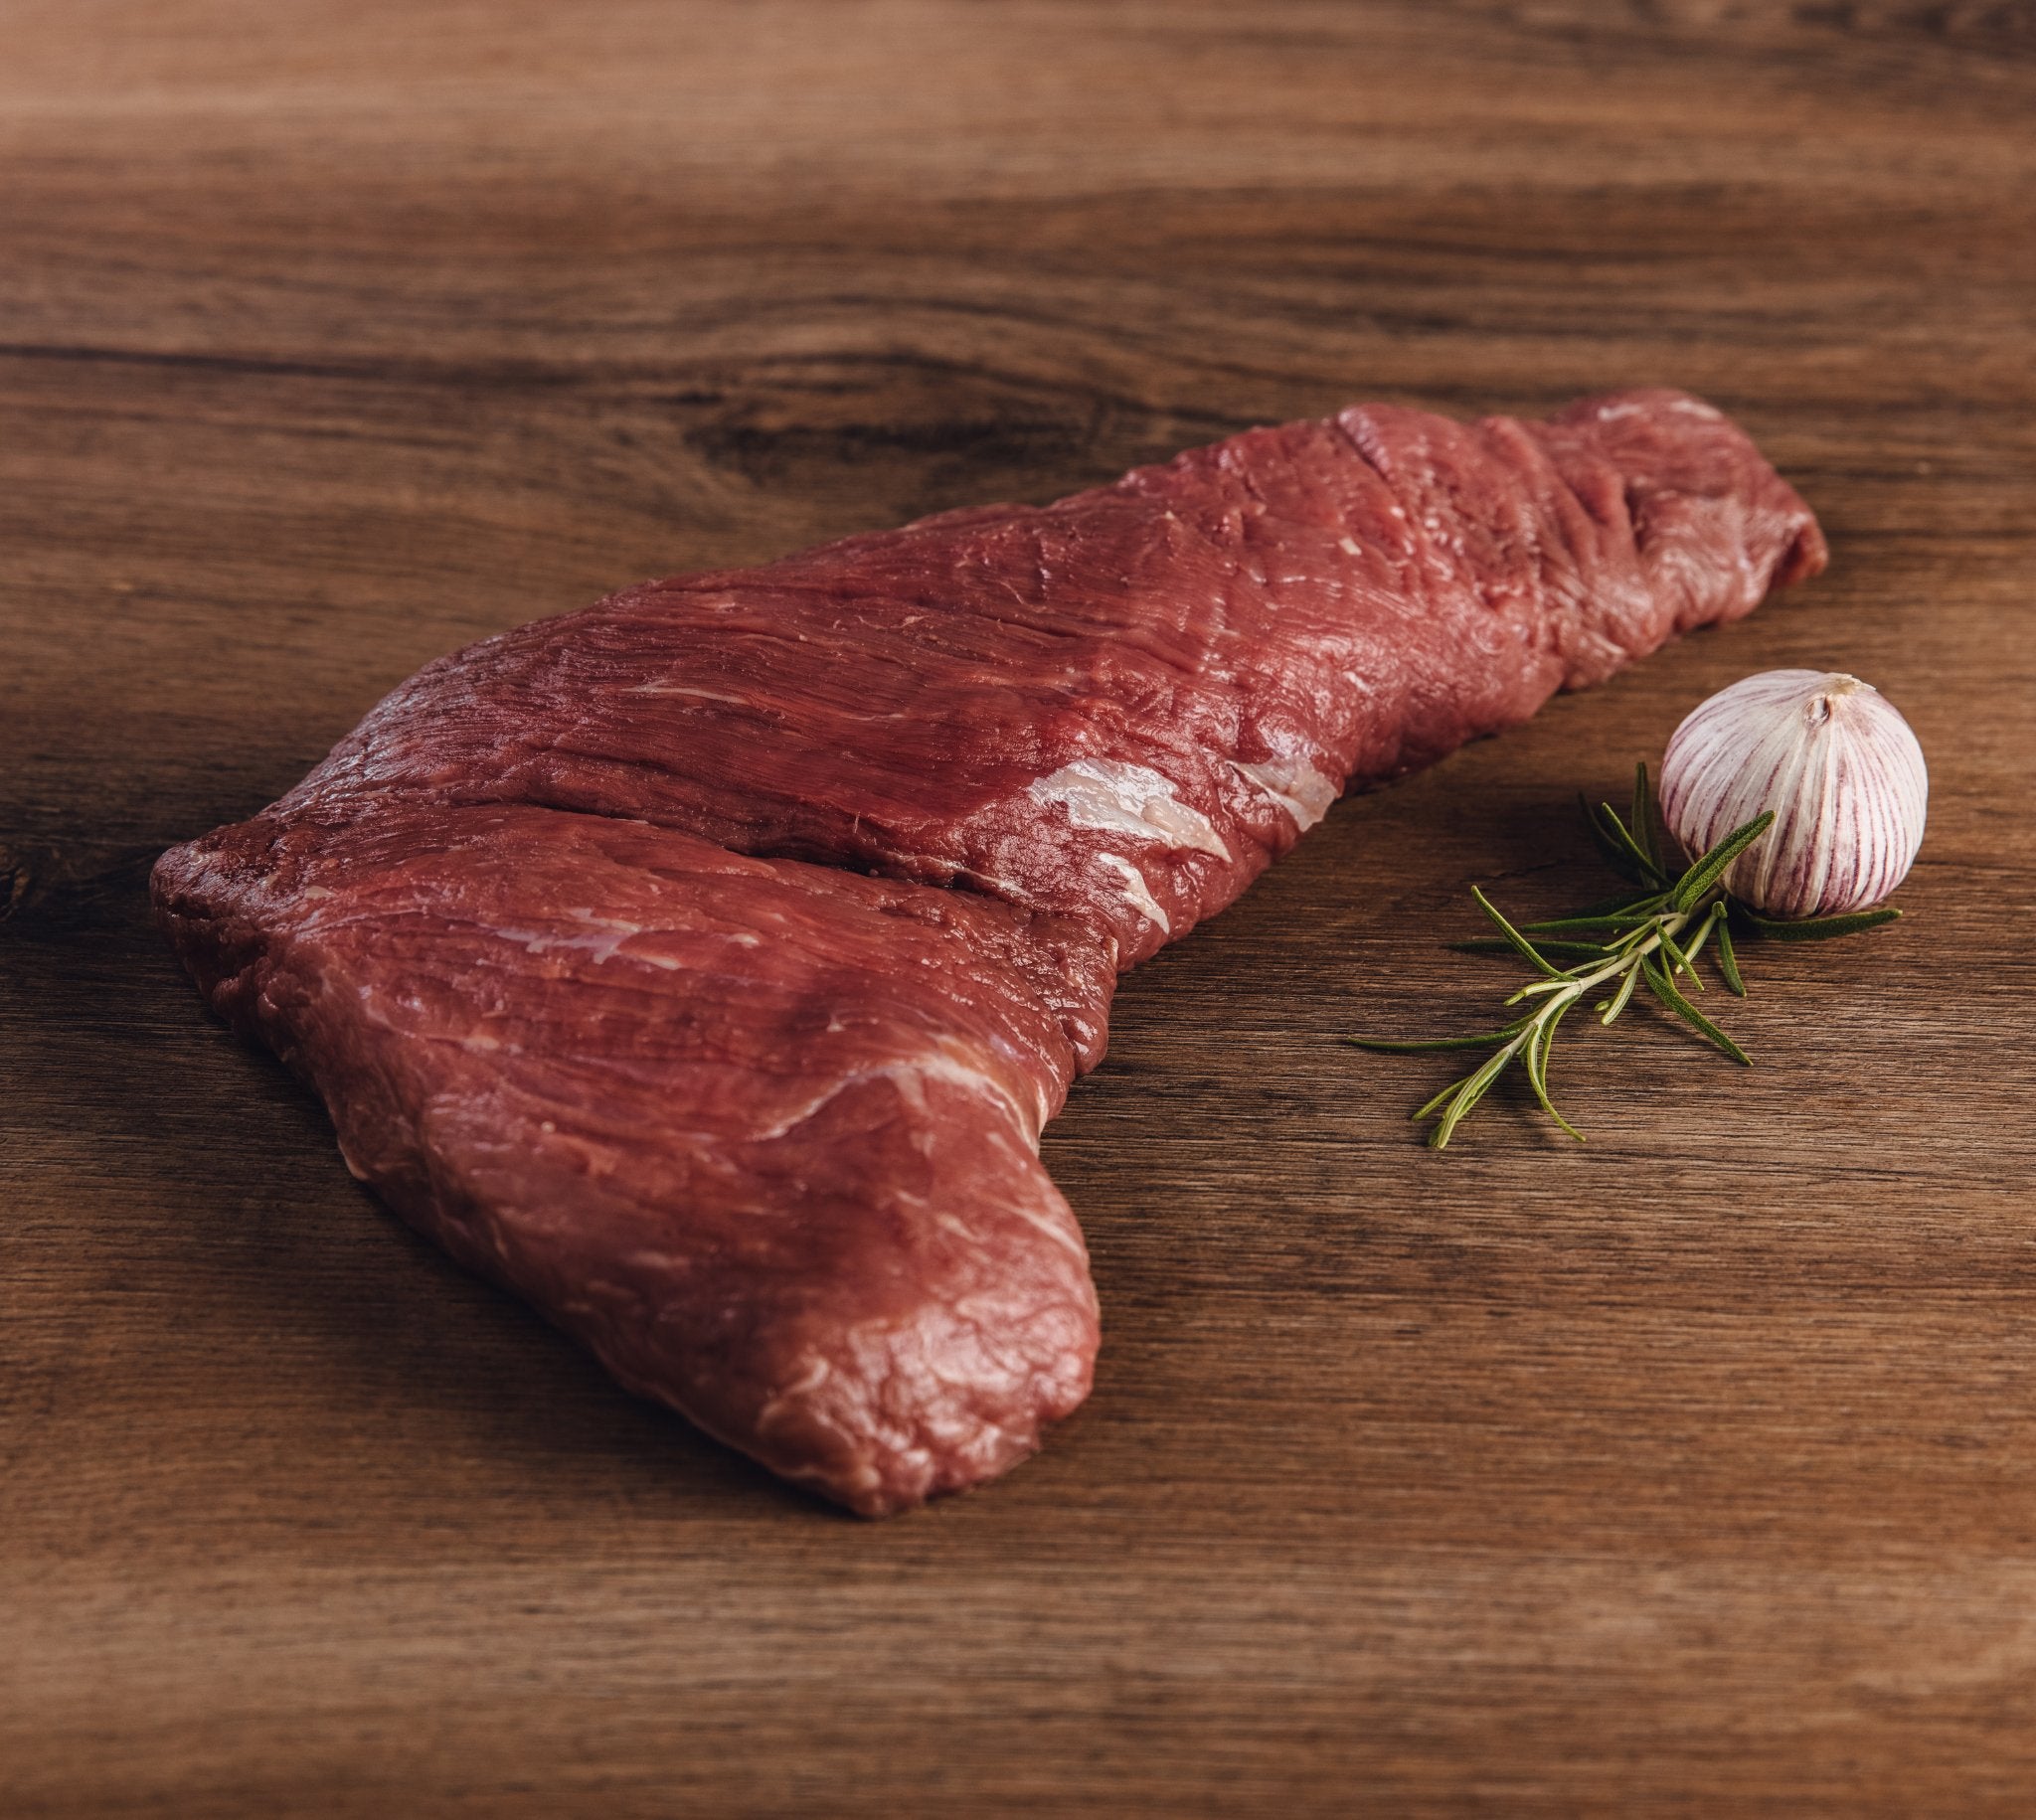 Tri Tip Bürgermeisterstück 800g - Saftiges Steak | BüffelBill Genießen Sie das saftige Tri Tip Steak von BüffelBill. Ideal für Braten und Sauerbraten, aus dem kleinen Teilstück zwischen Hüfte und Kugel. Kurze Fasern und einzigartiger Geschmack, wie beim T